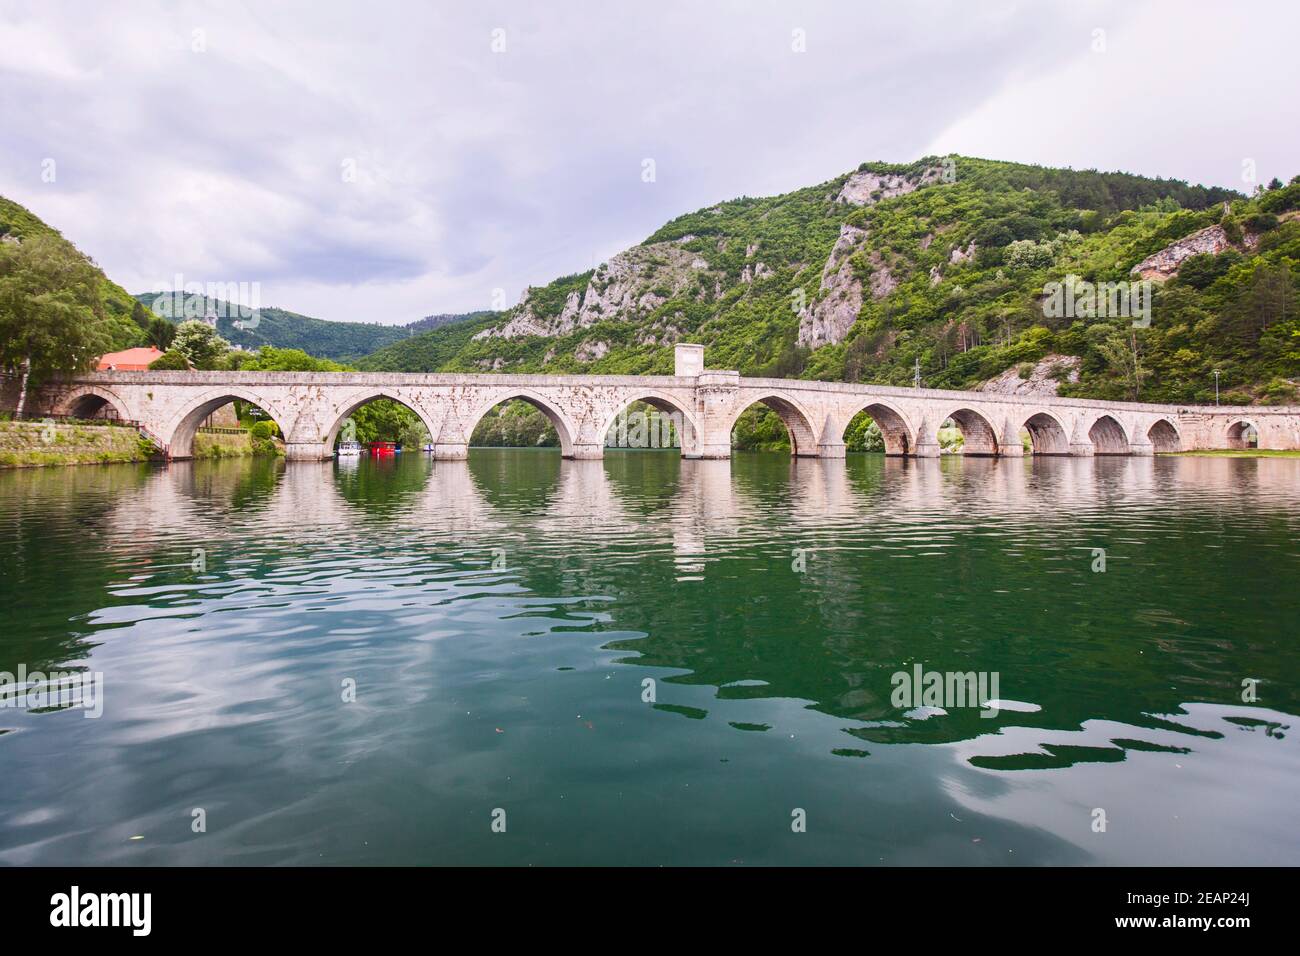 Puente histórico sobre el río Drina, Vista panorámica de la famosa atracción turística, Visegrad, Bosnia y Herzegovina Foto de stock